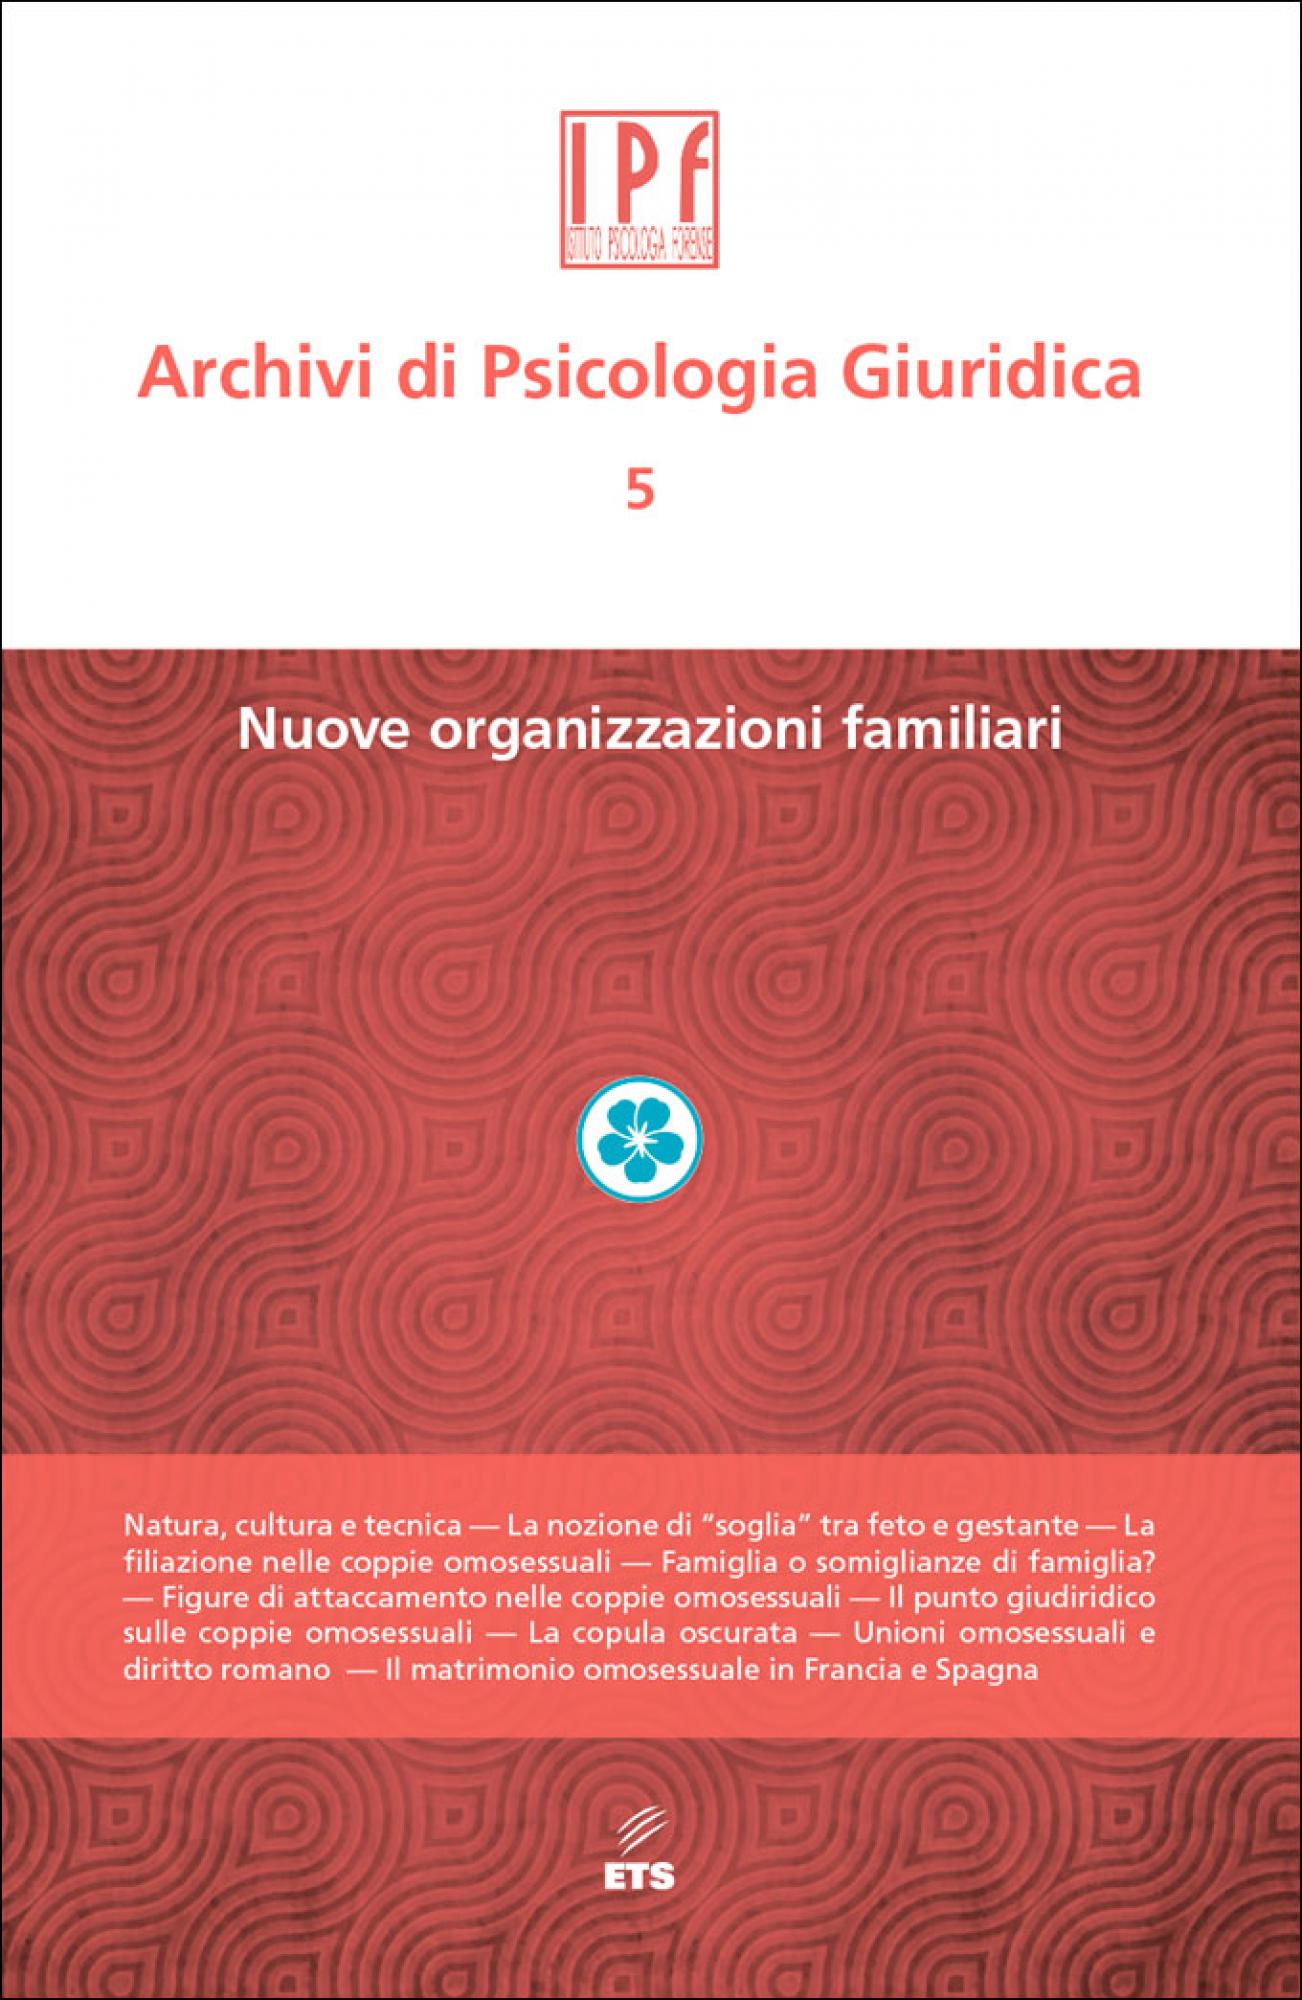 Archivi di Psicologia Giuridica – 5.Nuove organizzazioni familiari